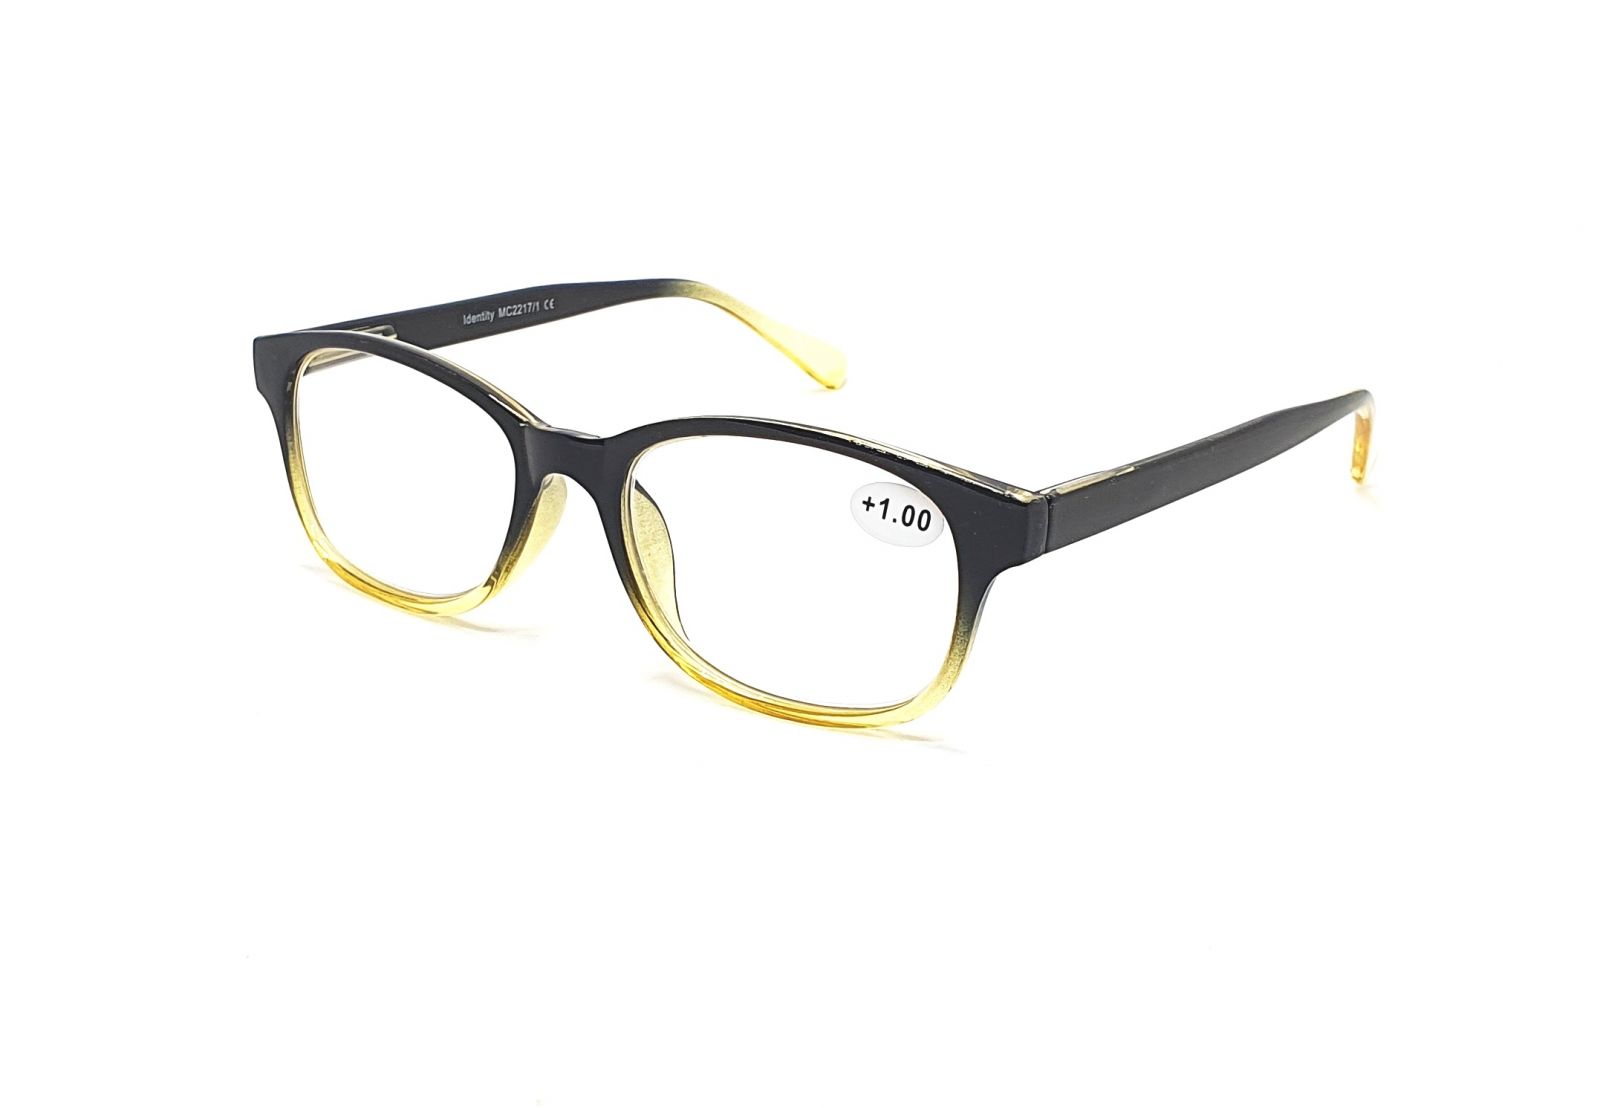 IDENTITY Dioptrické brýle MC2217 +2,00 flex black/green